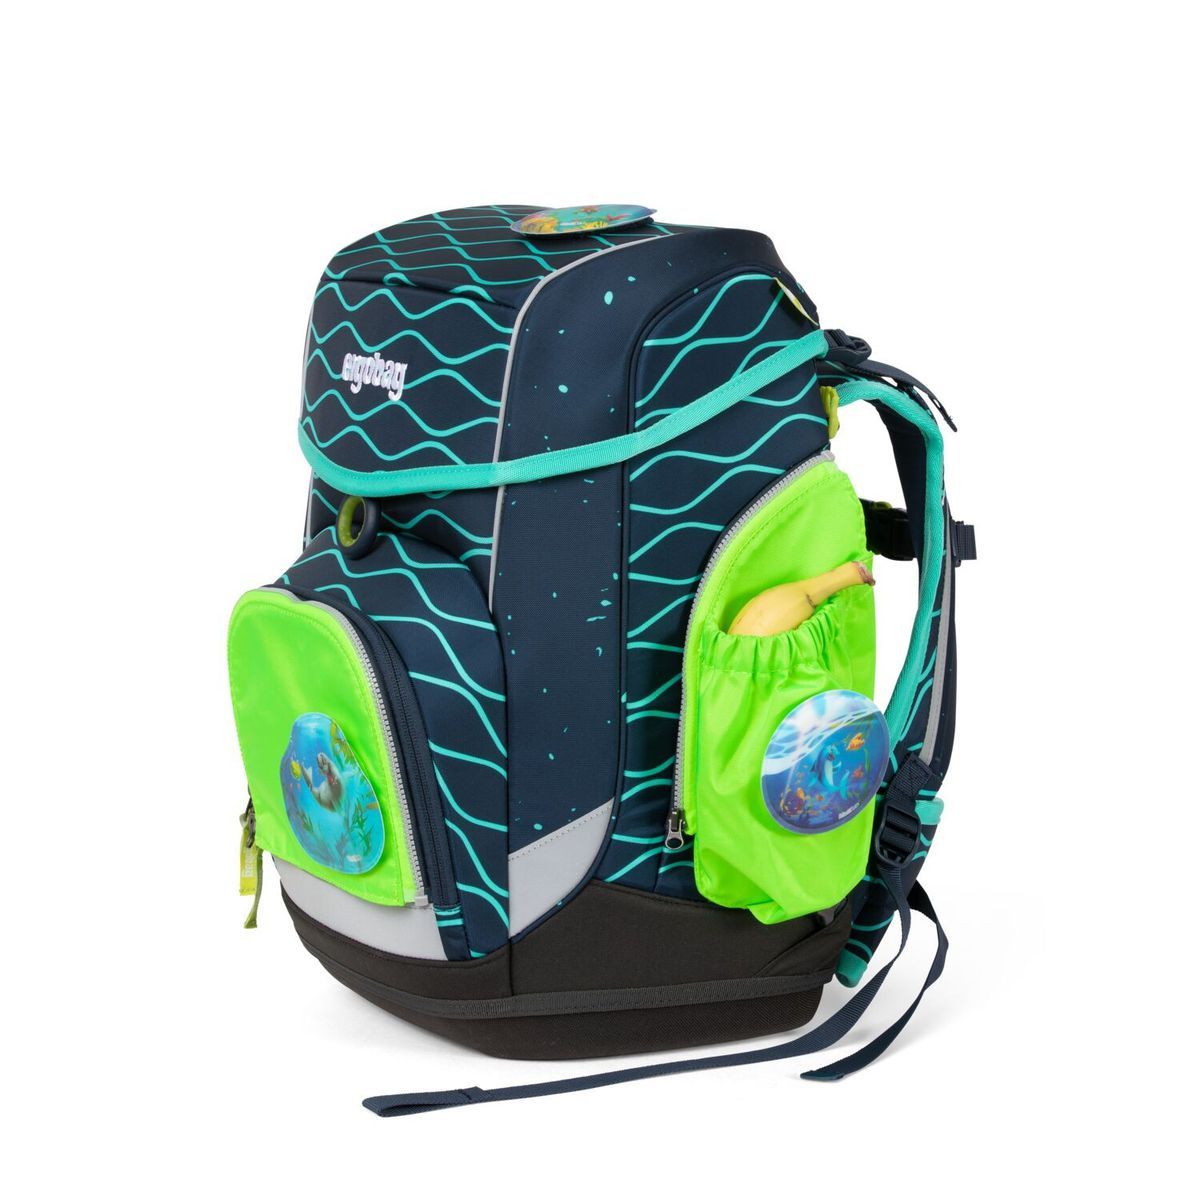 Ergobag Sicherheitsset Grün Fluoreszierende Zip-Seitentaschen 3tlg.